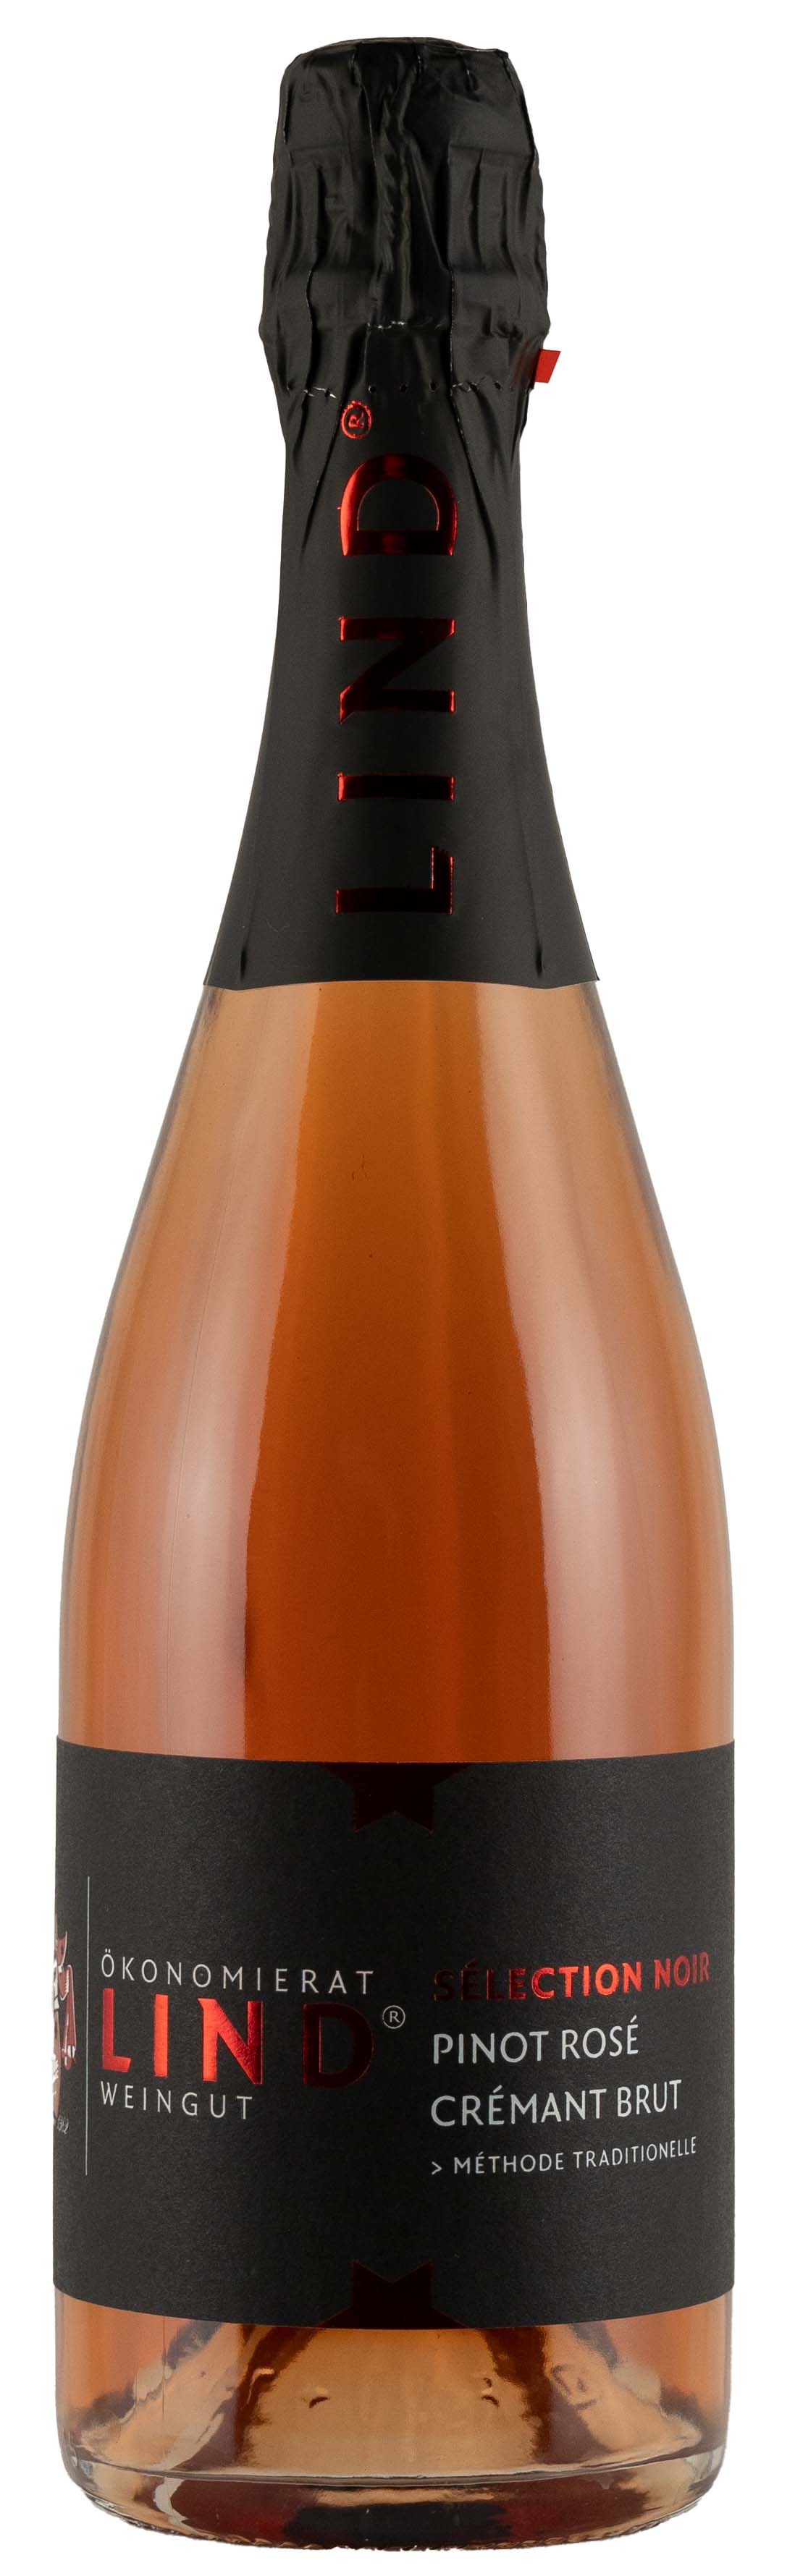 Nr. 34 - Pinot Rosé Crémant.jpg